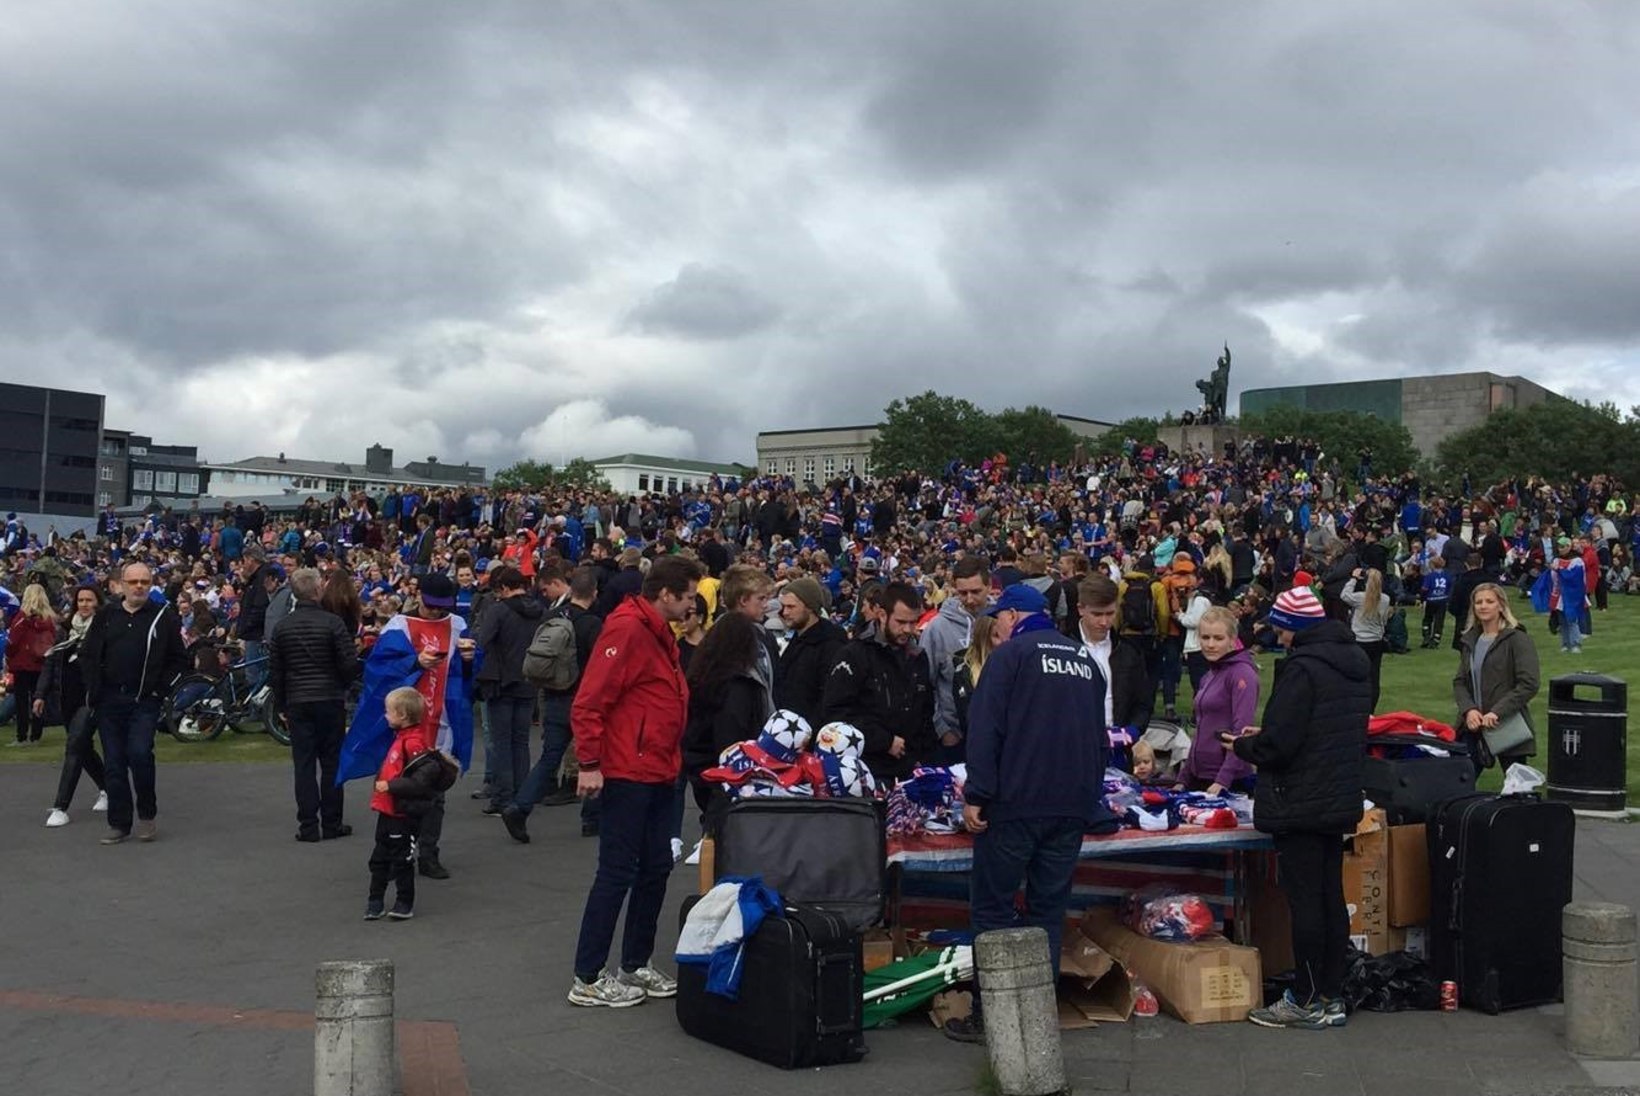 FOTOD ISLANDILT | Tuhanded inimesed on kogunenud Reykjaviki kesklinna jalgpalli vaatama